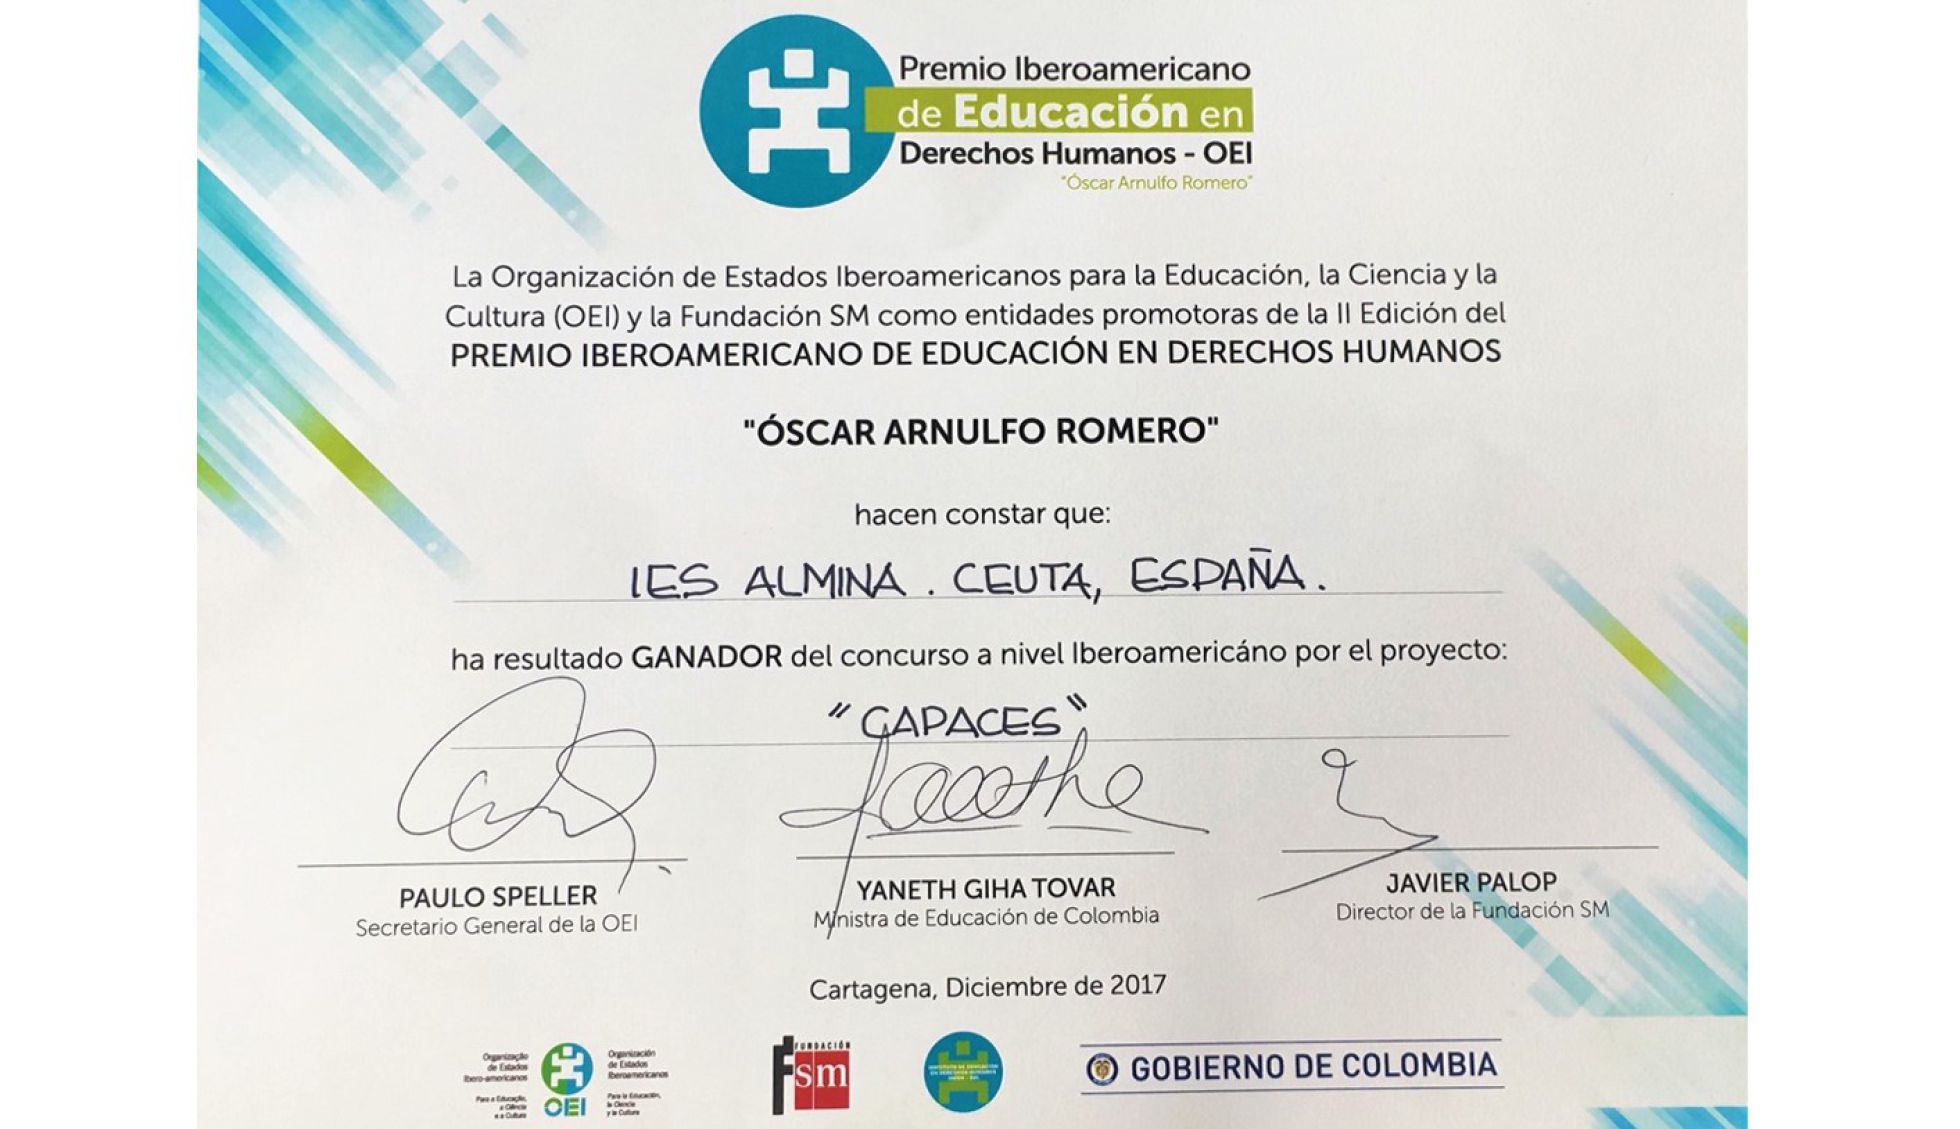 Premio de Educación en Derechos Humanos “Óscar Arnulfo Romero” (OEA)